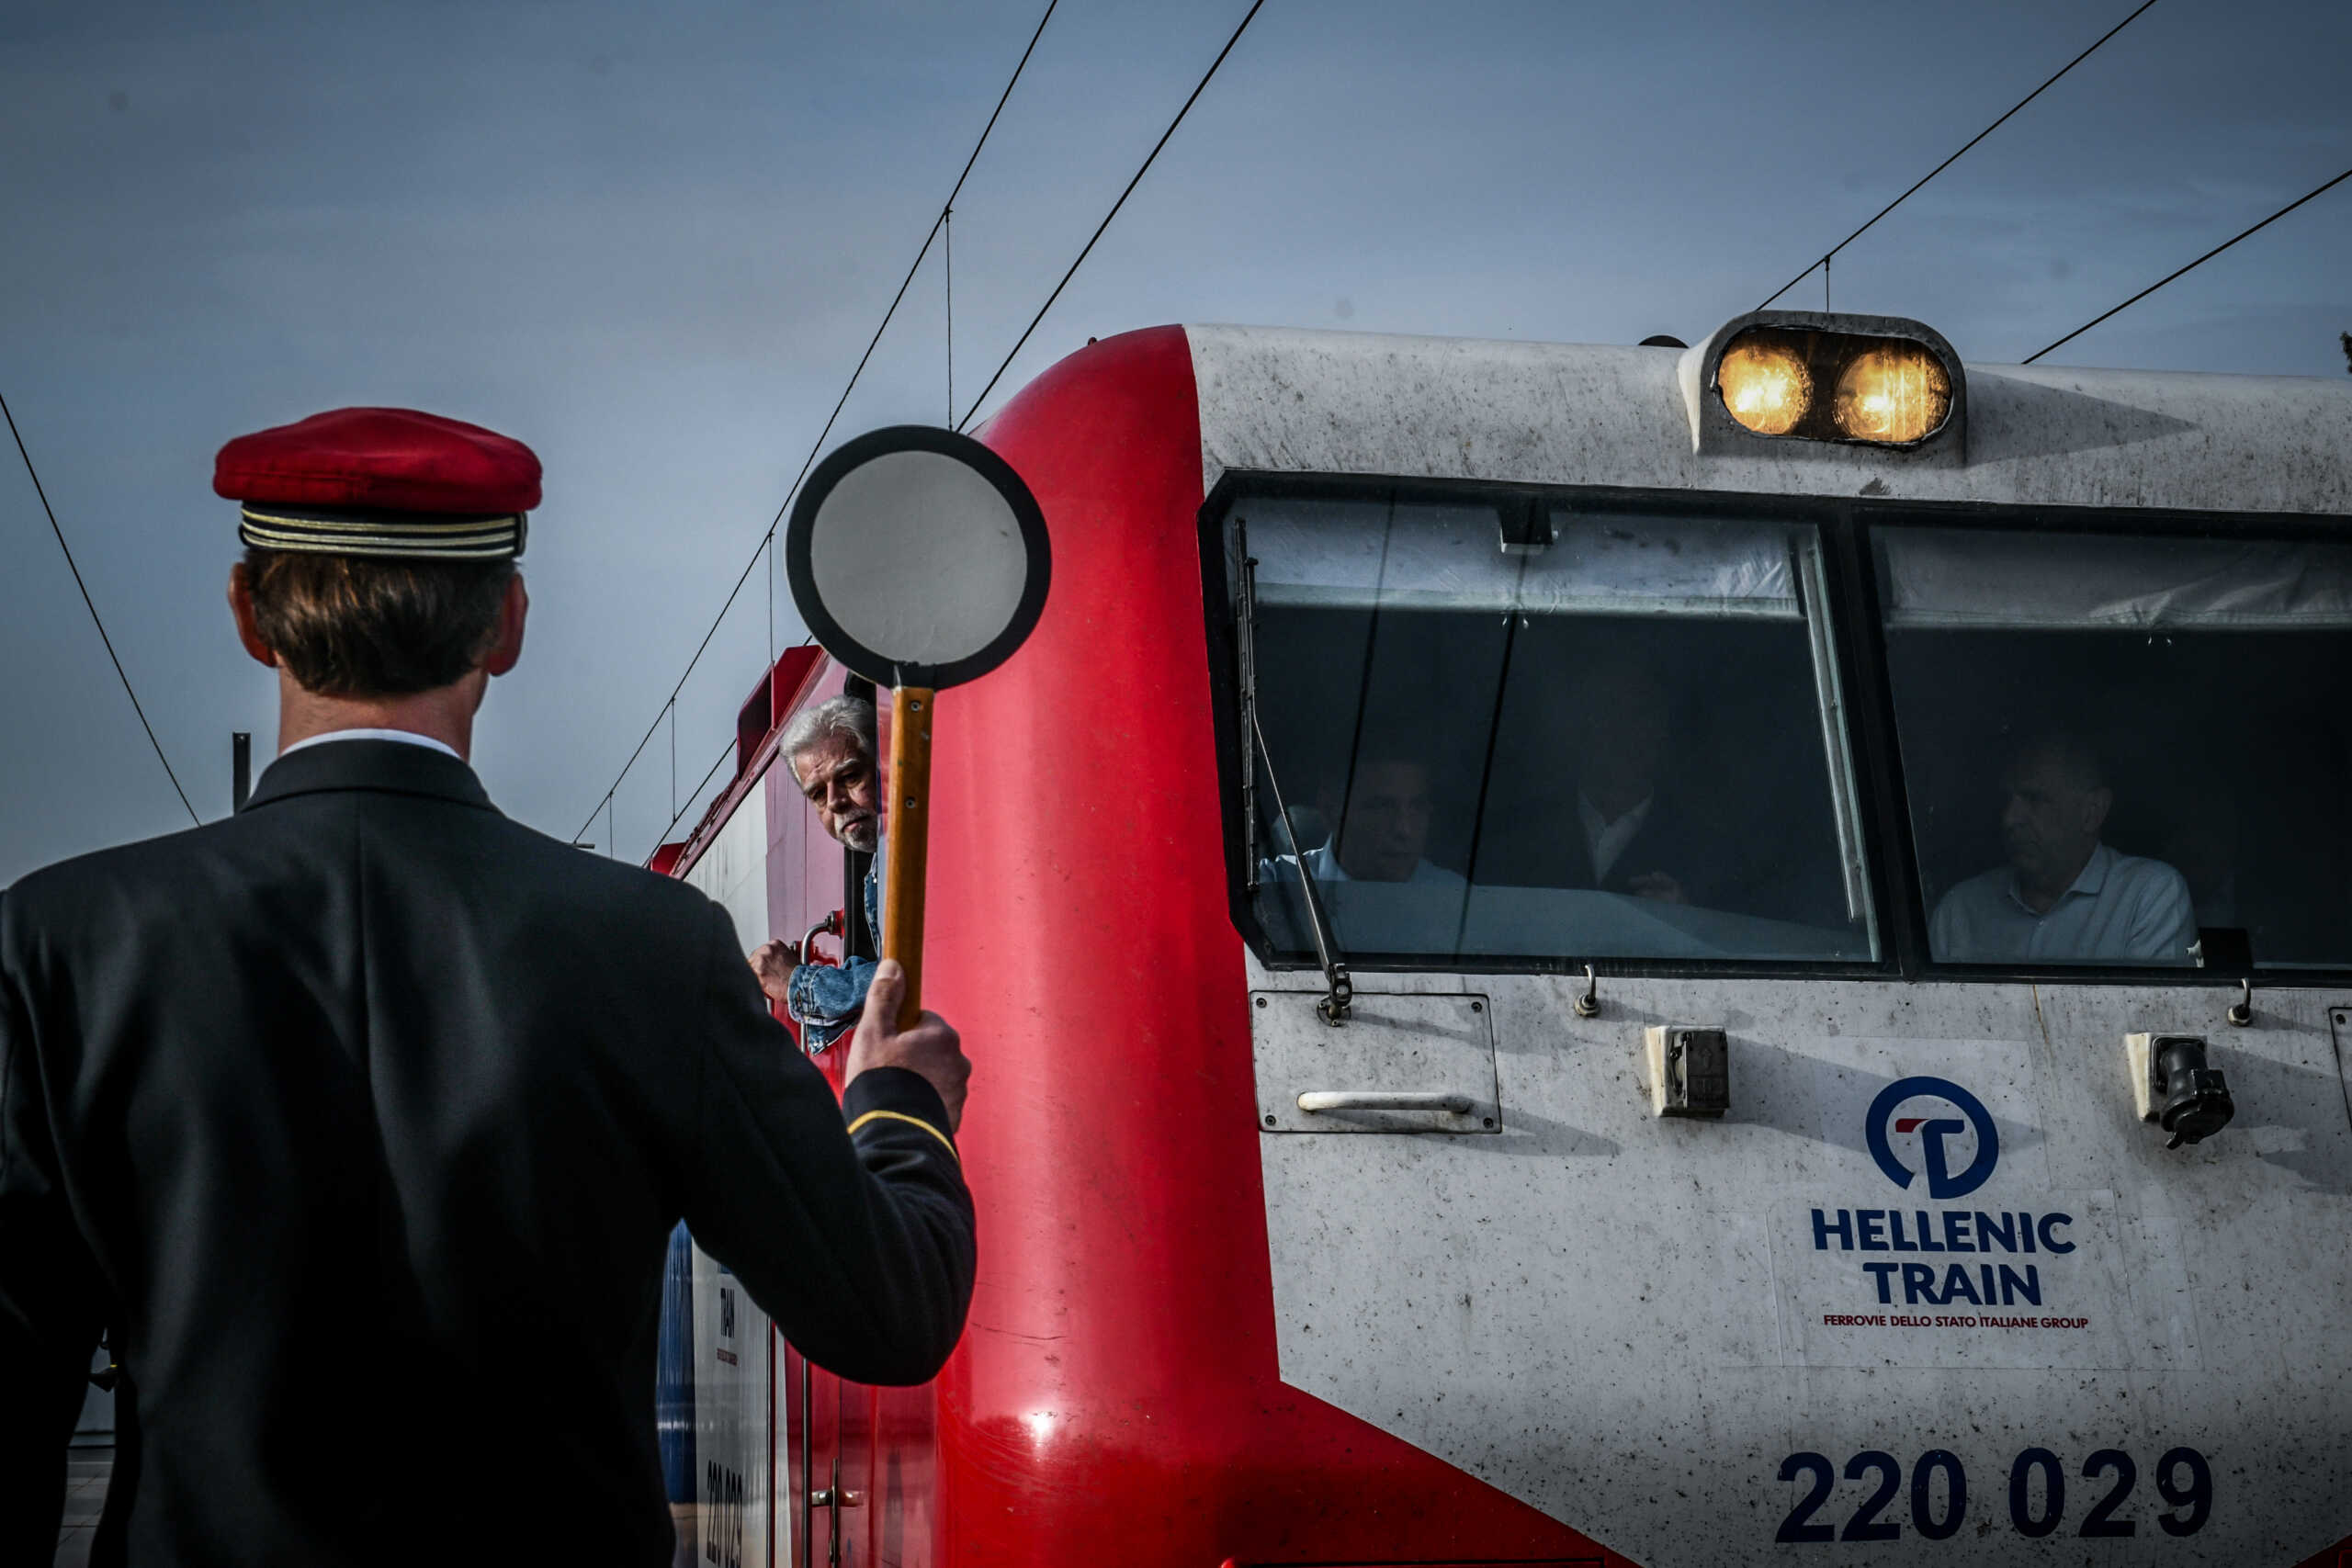 Hellenic Train: Τα δρομολόγια επιβατικών τρένων στη γραμμή Αθήνα – Θεσσαλονίκη ξεκινούν ξανά από σήμερα